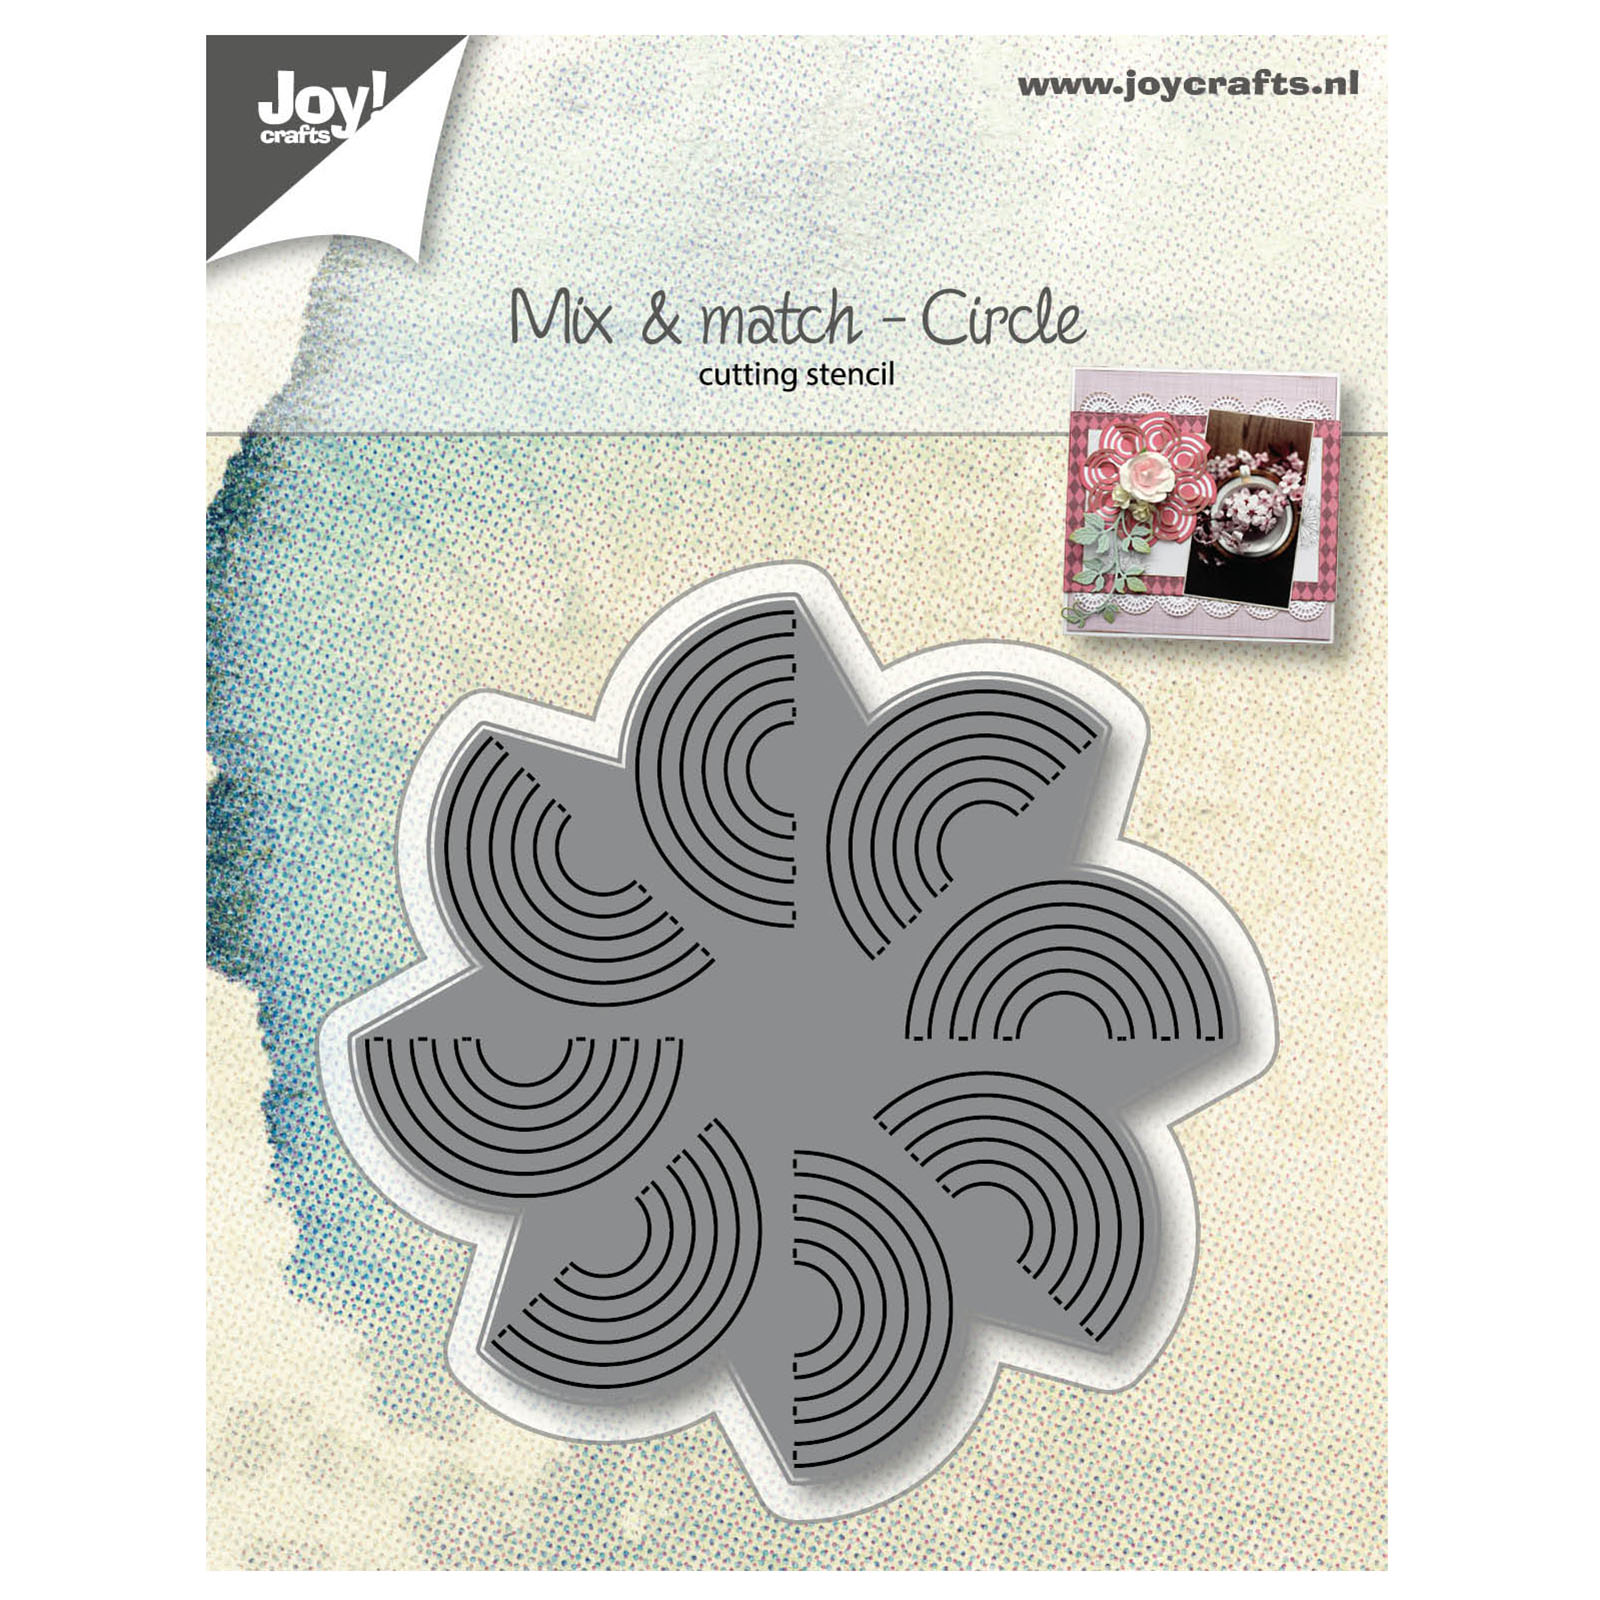 Joy!Crafts • Cutting die Mix & Match Cirle